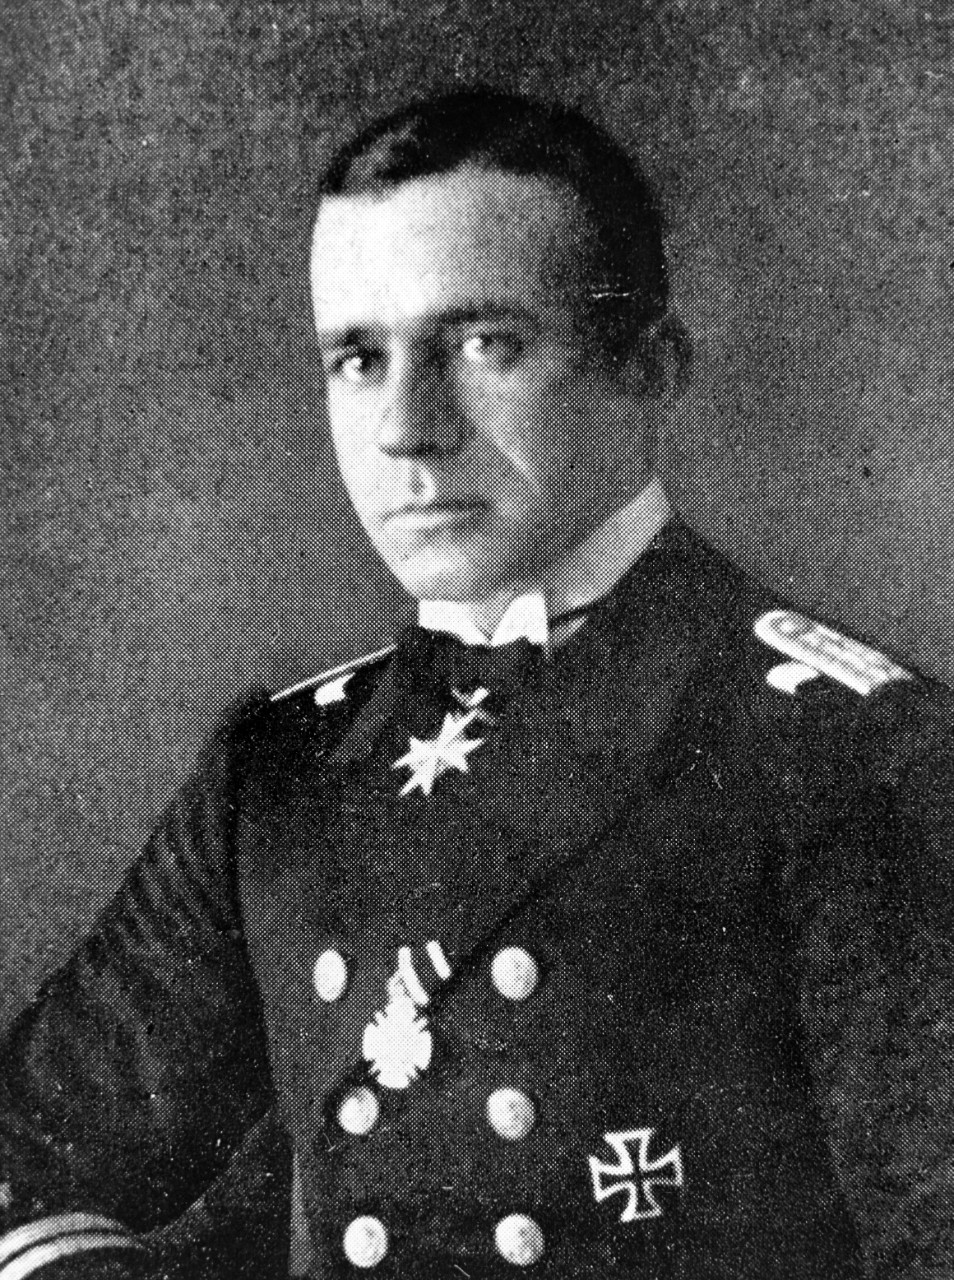 Kapitän Lt. Arnauld de la Perrière, Imperial German Navy, circa 1918.